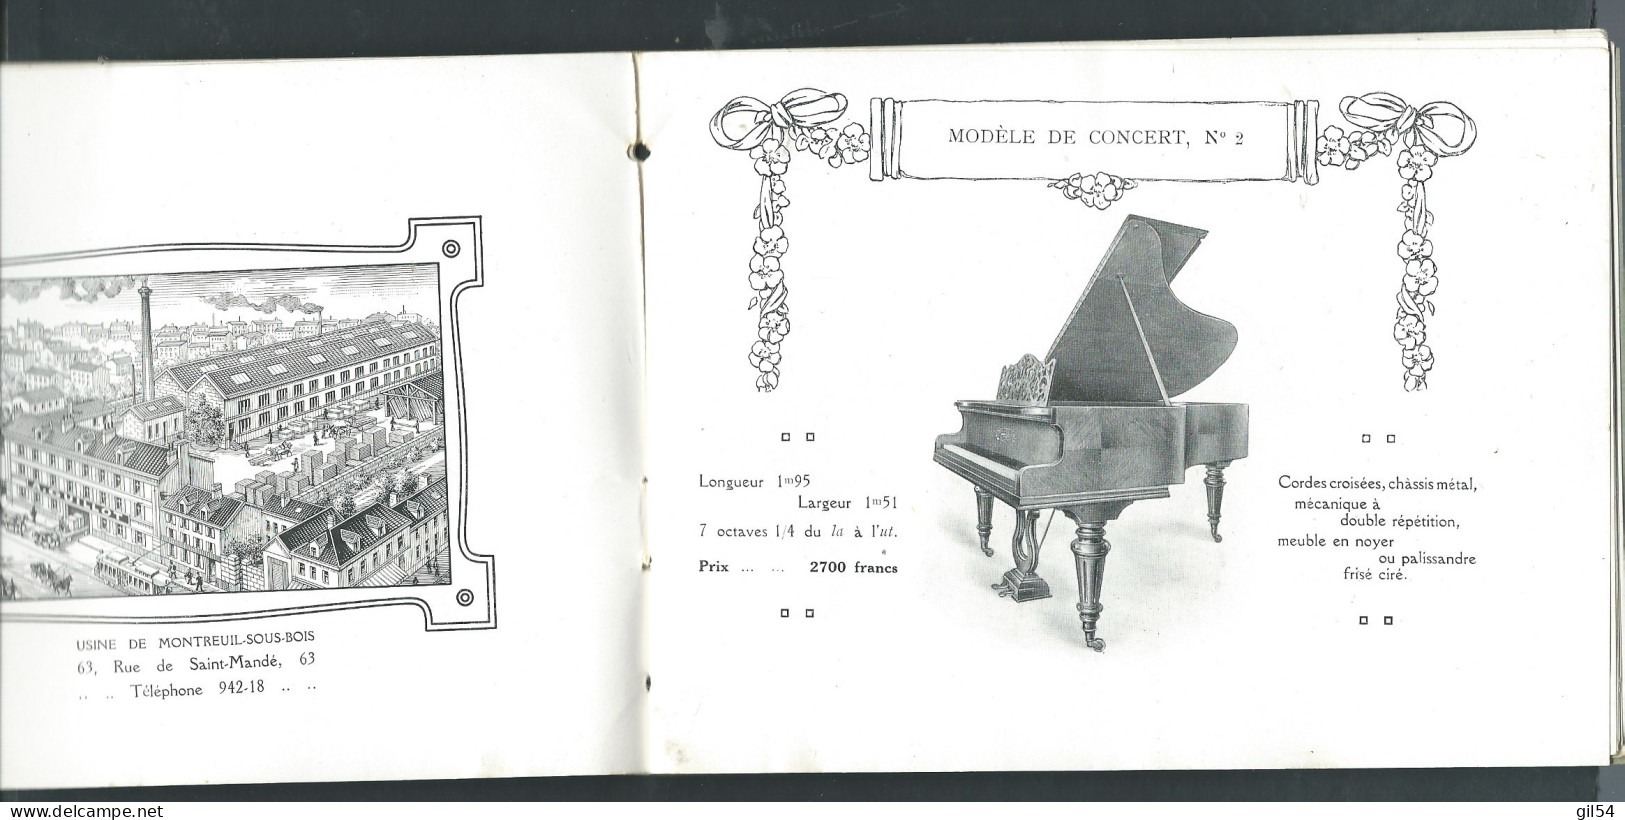 Fascicule -  Catalogue A. GUILLOT PARIS - MANUFACTURE DE PIANOS   Aw16402 - Musique